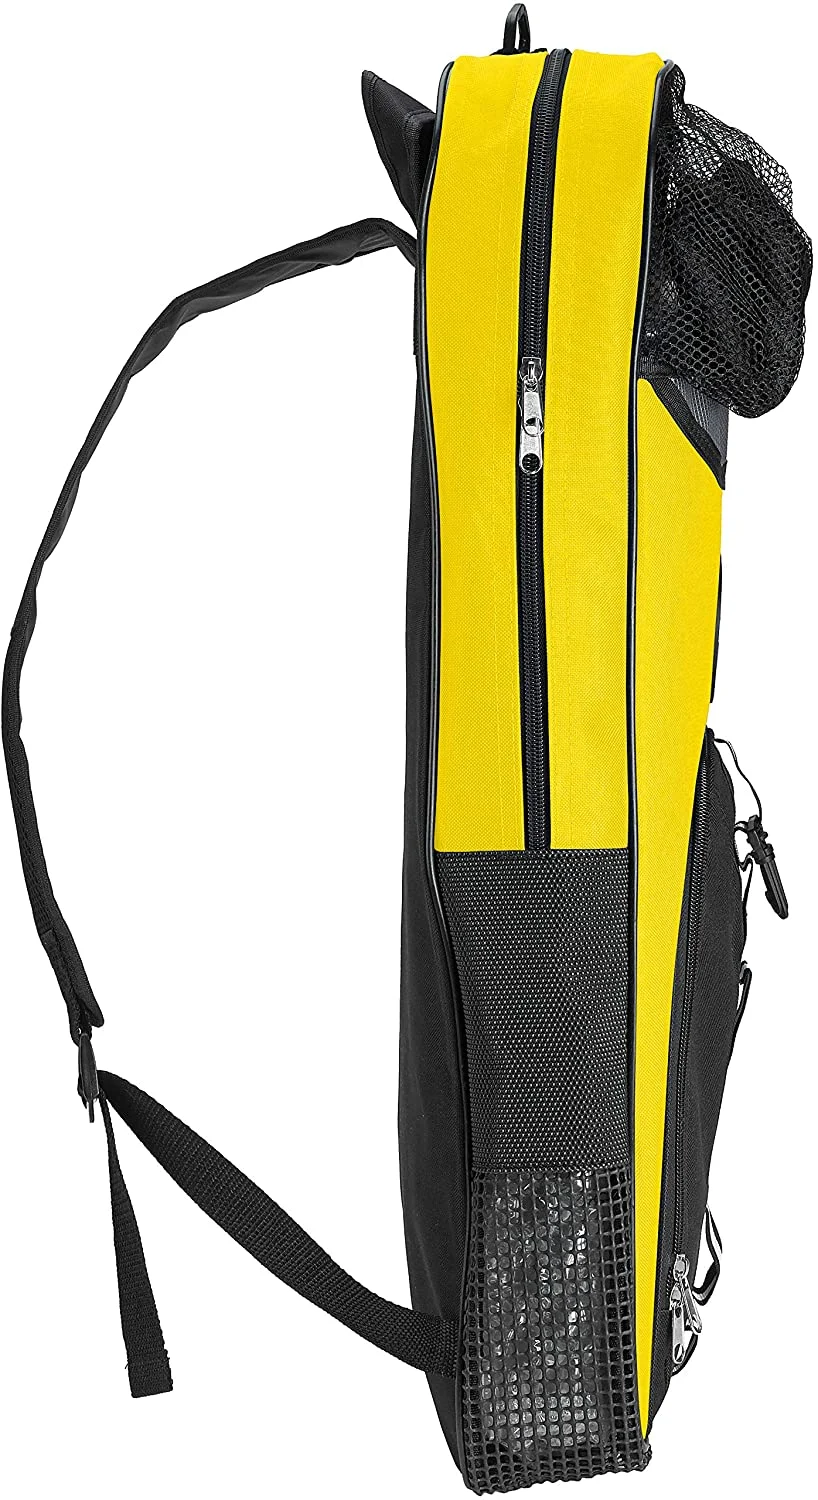 Snorkeling Backpack Diving Gear Bag with Shoulder Strap